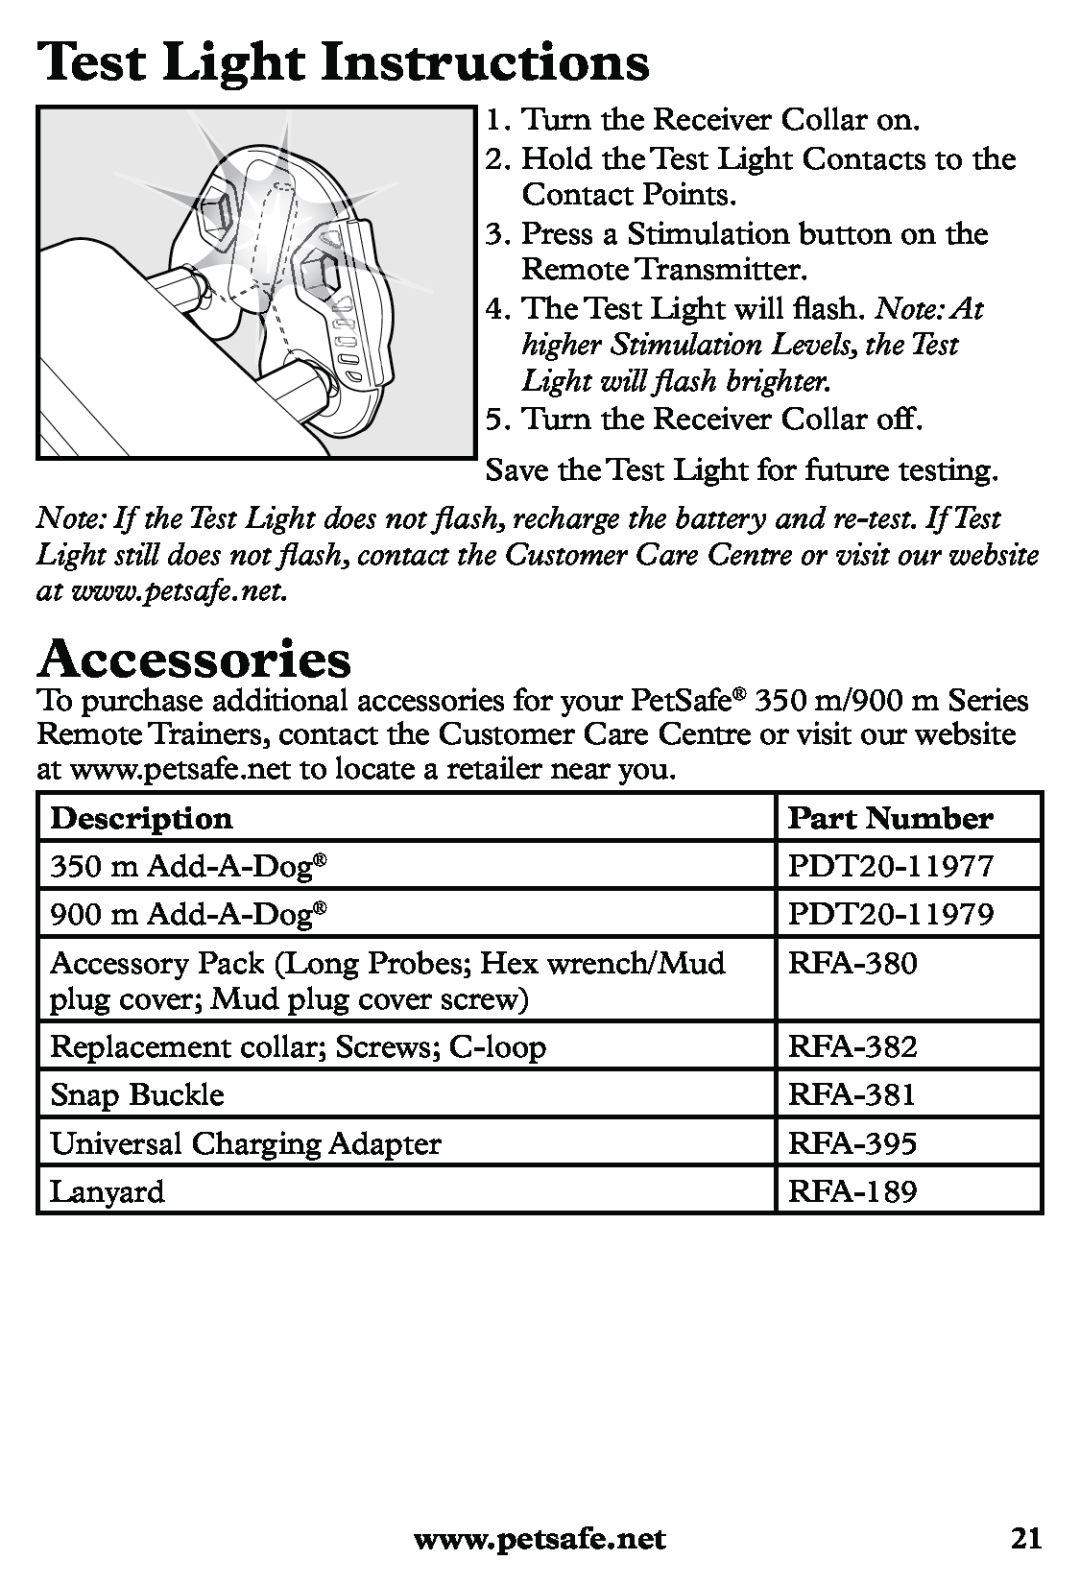 Petsafe PDT20-11939 manuel dutilisation Test Light Instructions, Accessories, Description, Part Number 